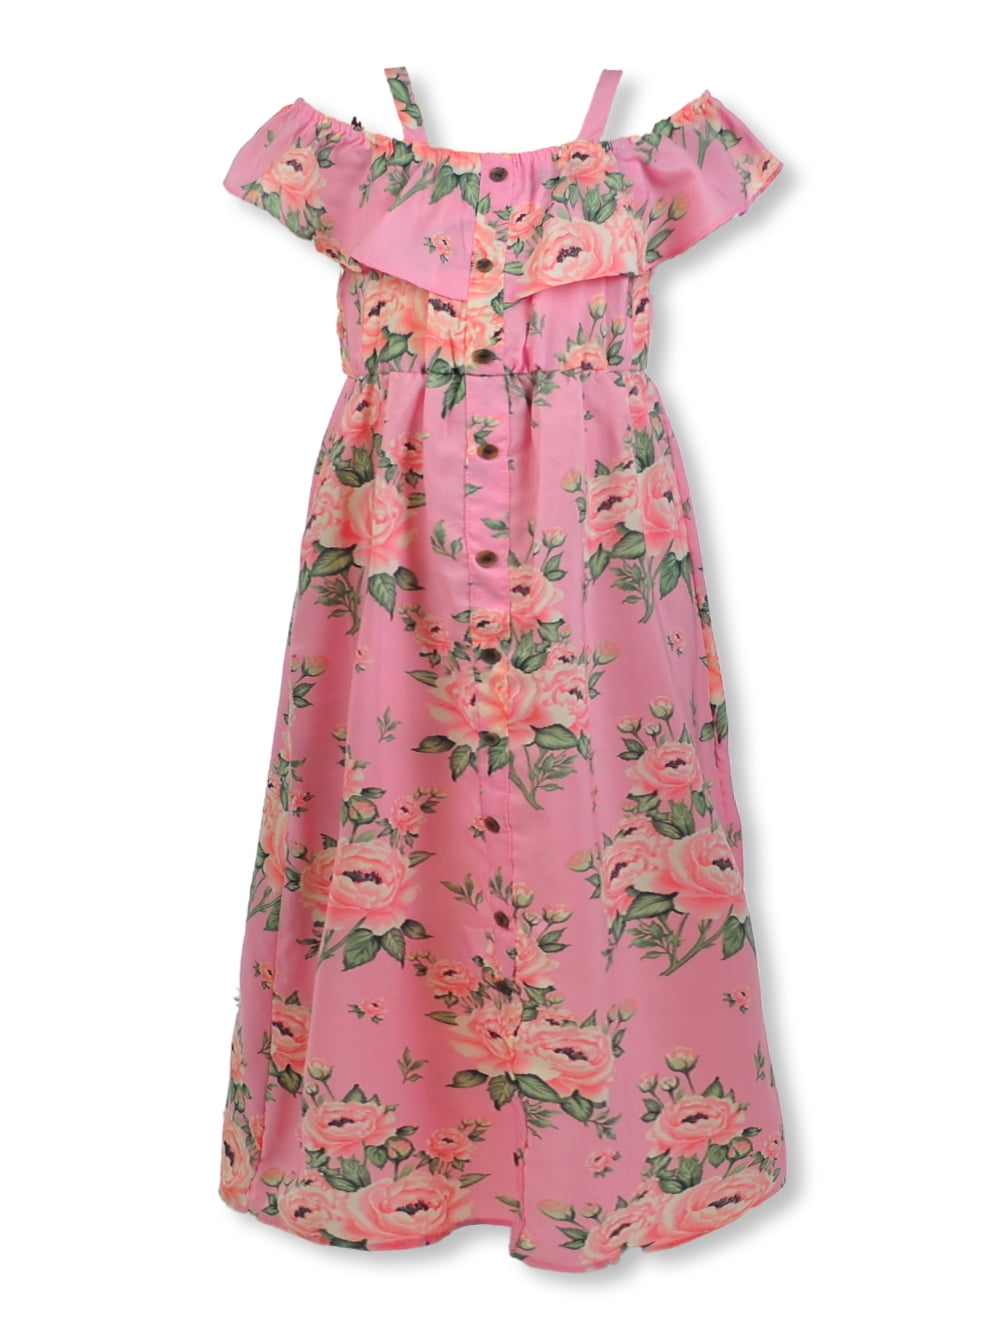 hengel lengte staart RMLA Girls' Tropical Ruffle Dress - pink, 8 (Big Girls) - Walmart.com